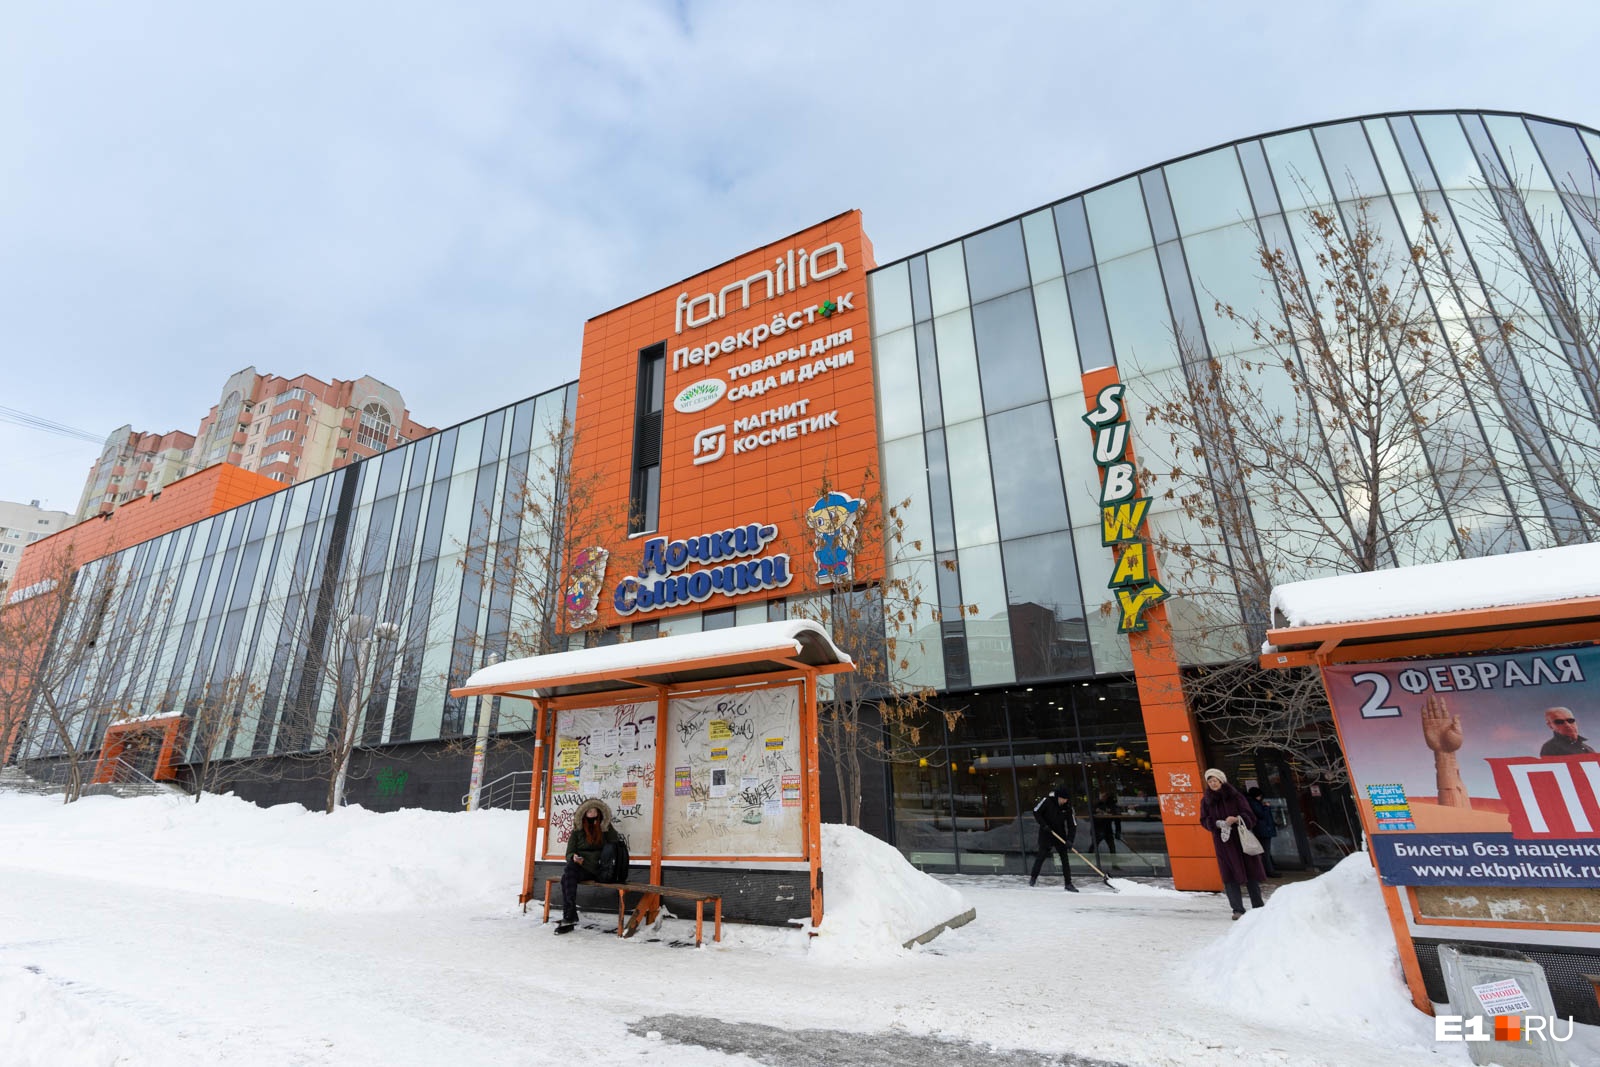 Вот такая «Хурма»: депутат Смирнов решил переименовать странный торговый центр